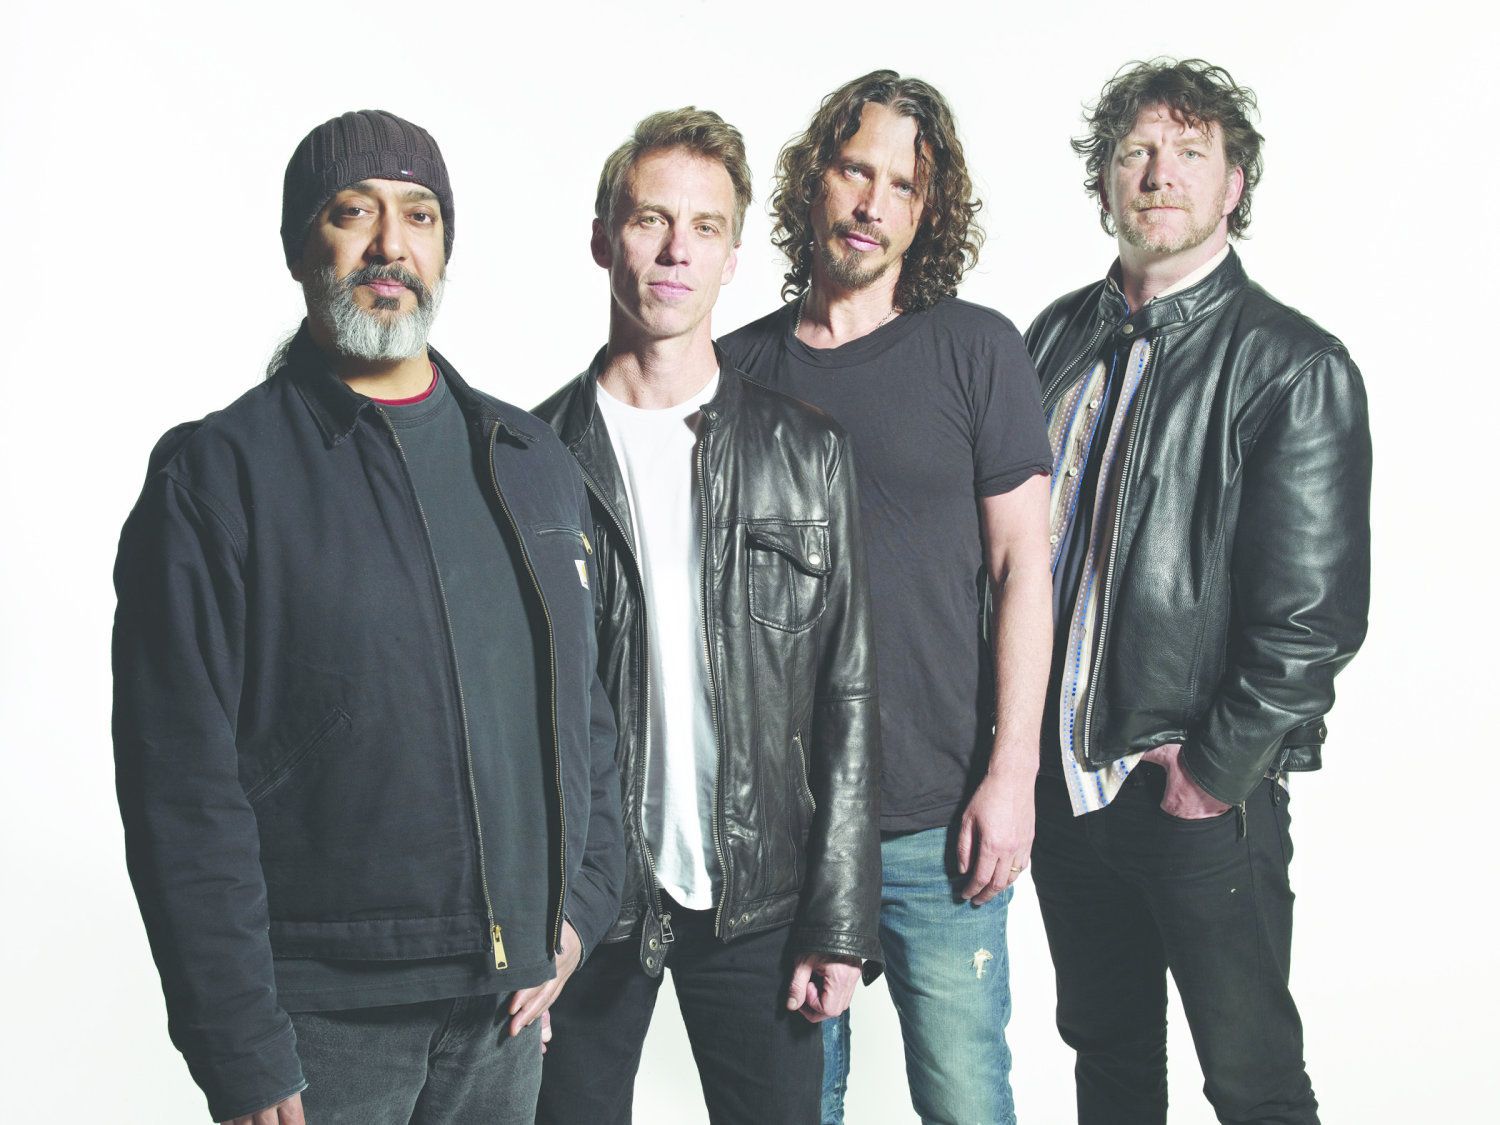 Witwe von Chris Cornell verklagt die Band